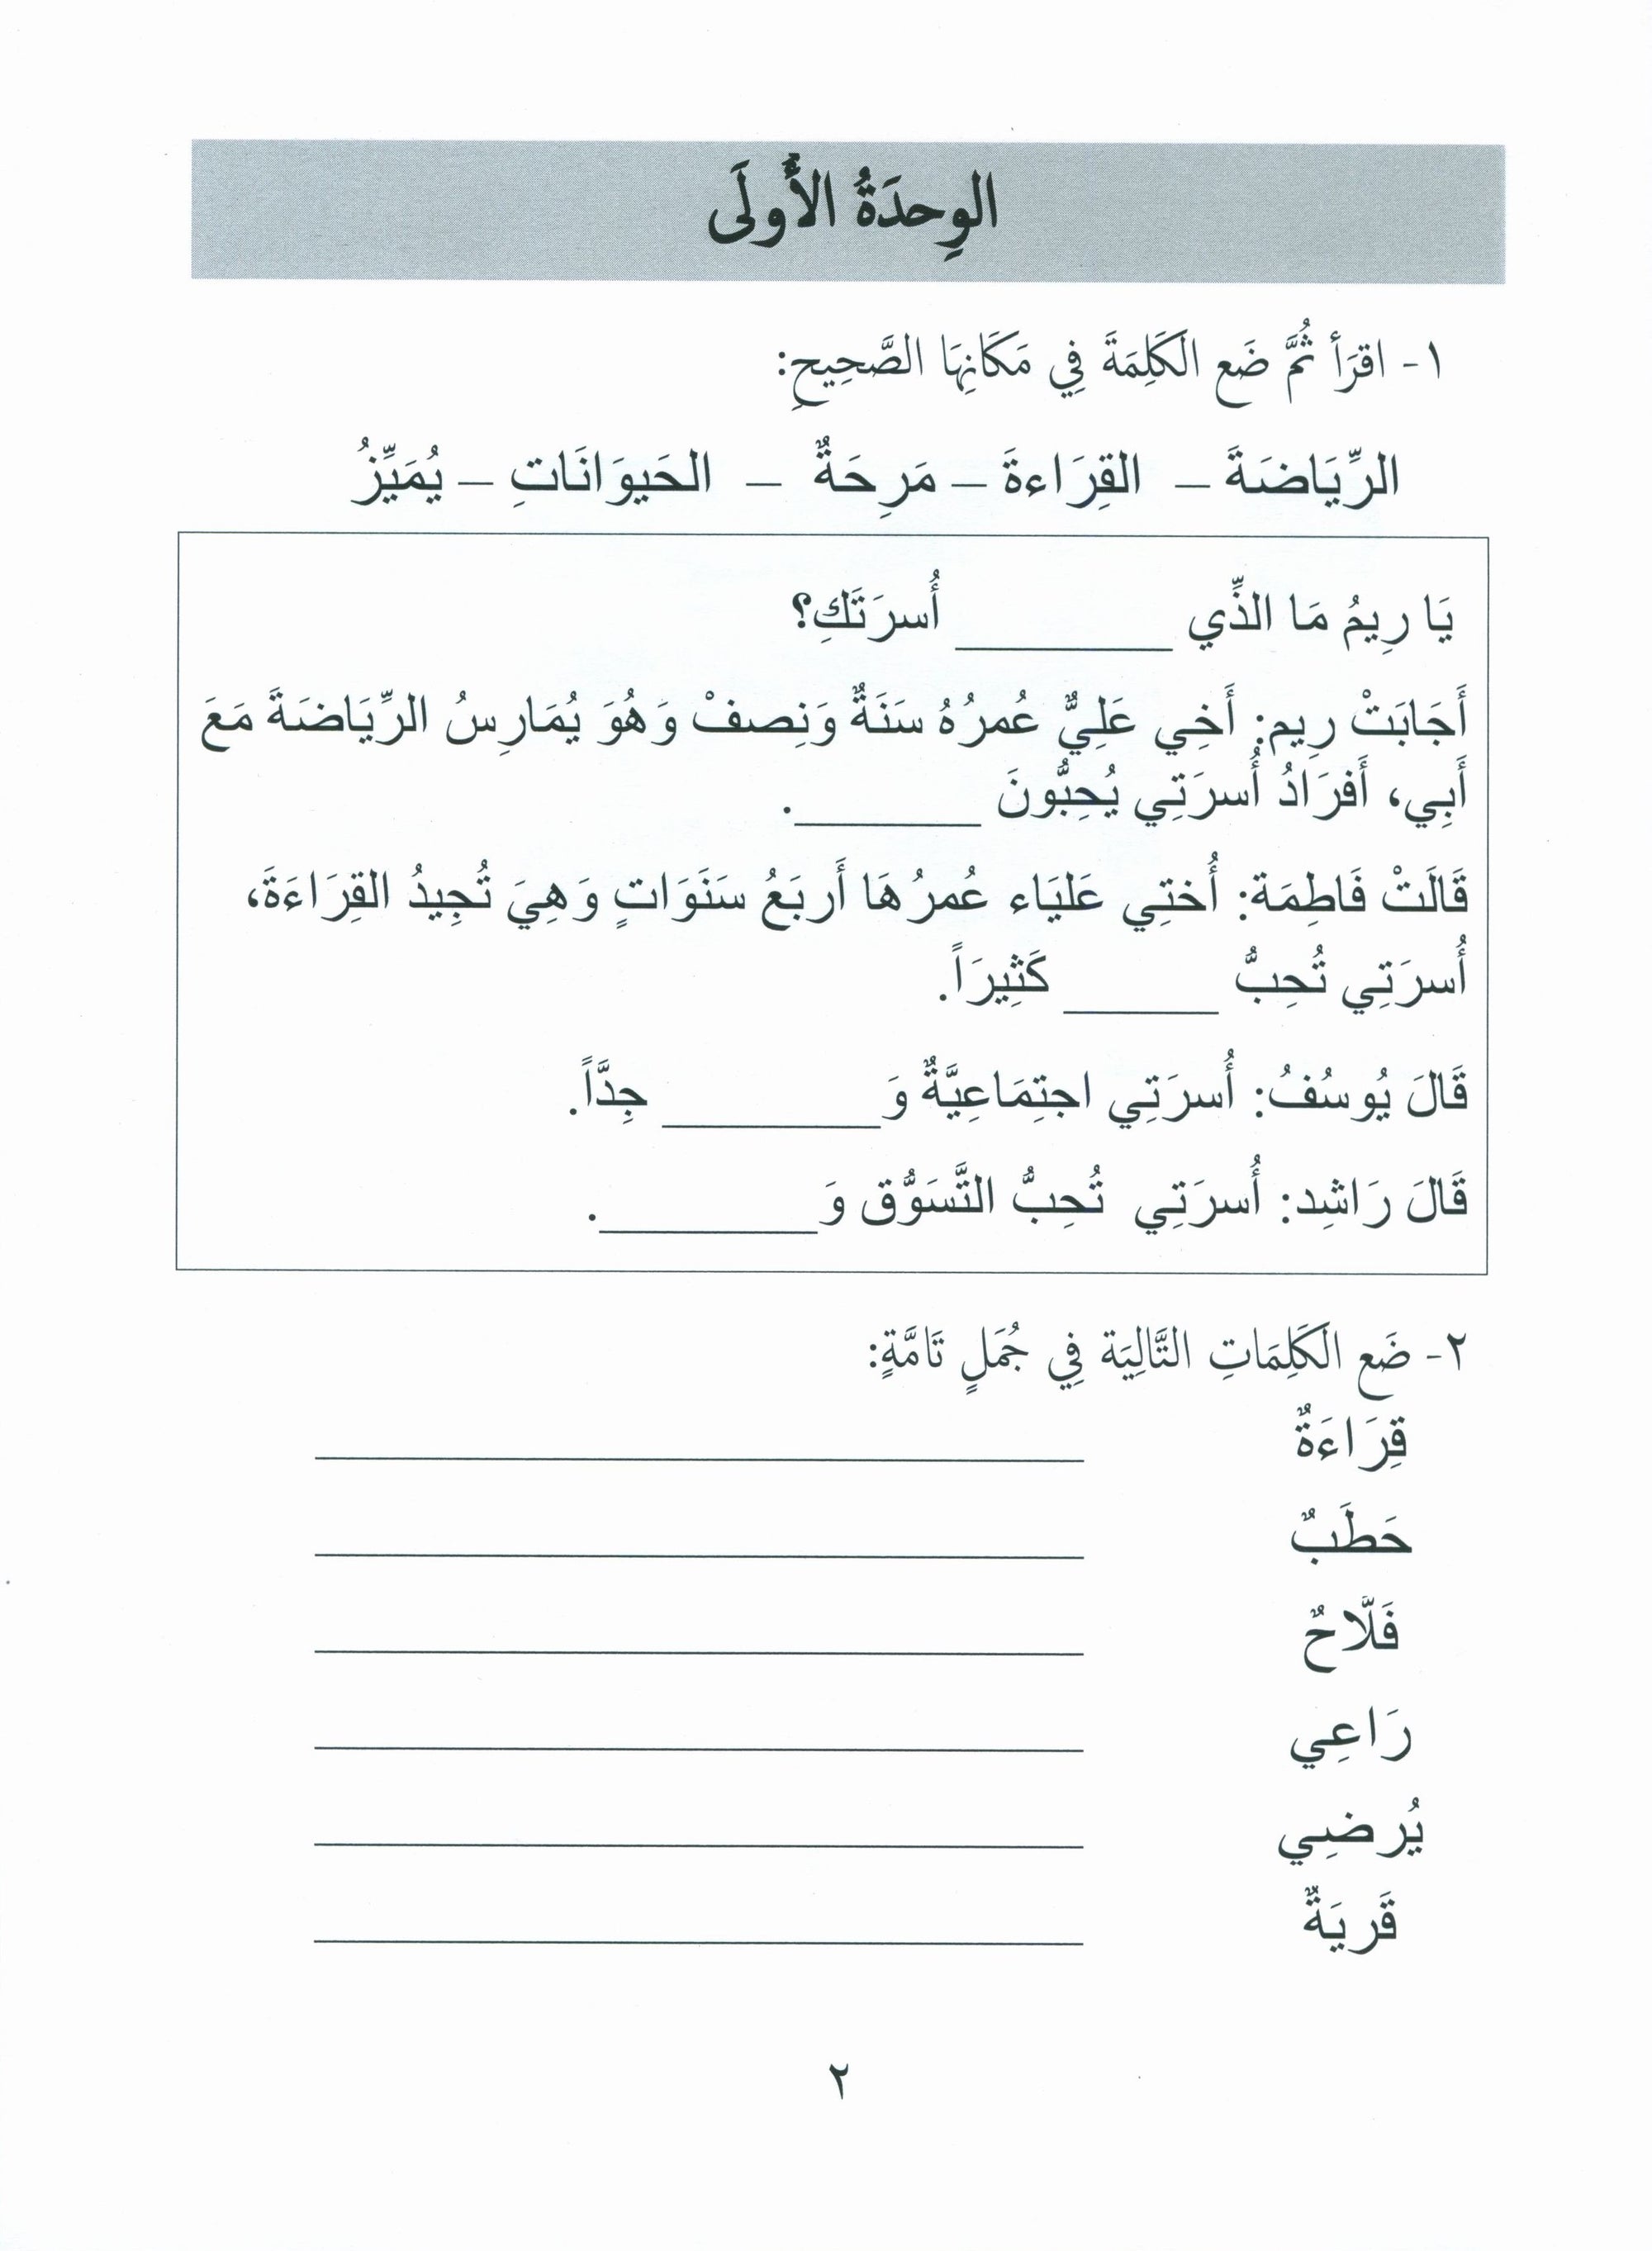 Gems of Arabic Assessment Level 3